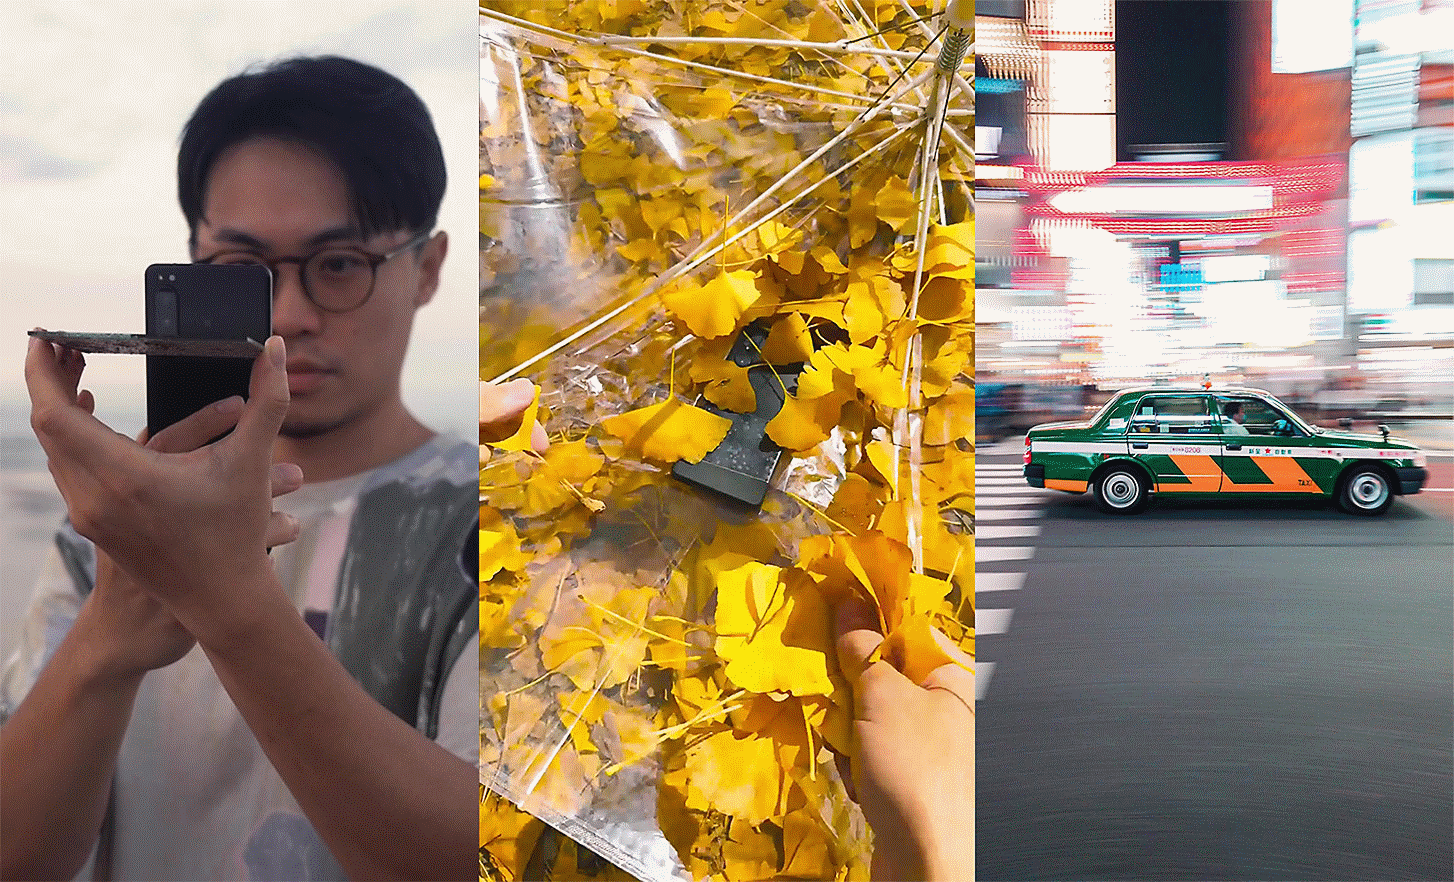 Trois portraits côte à côte : une personne prenant une photo (gauche), image d'un téléphone entre des feuilles (milieu) et une voiture sur une route en ville (droite)